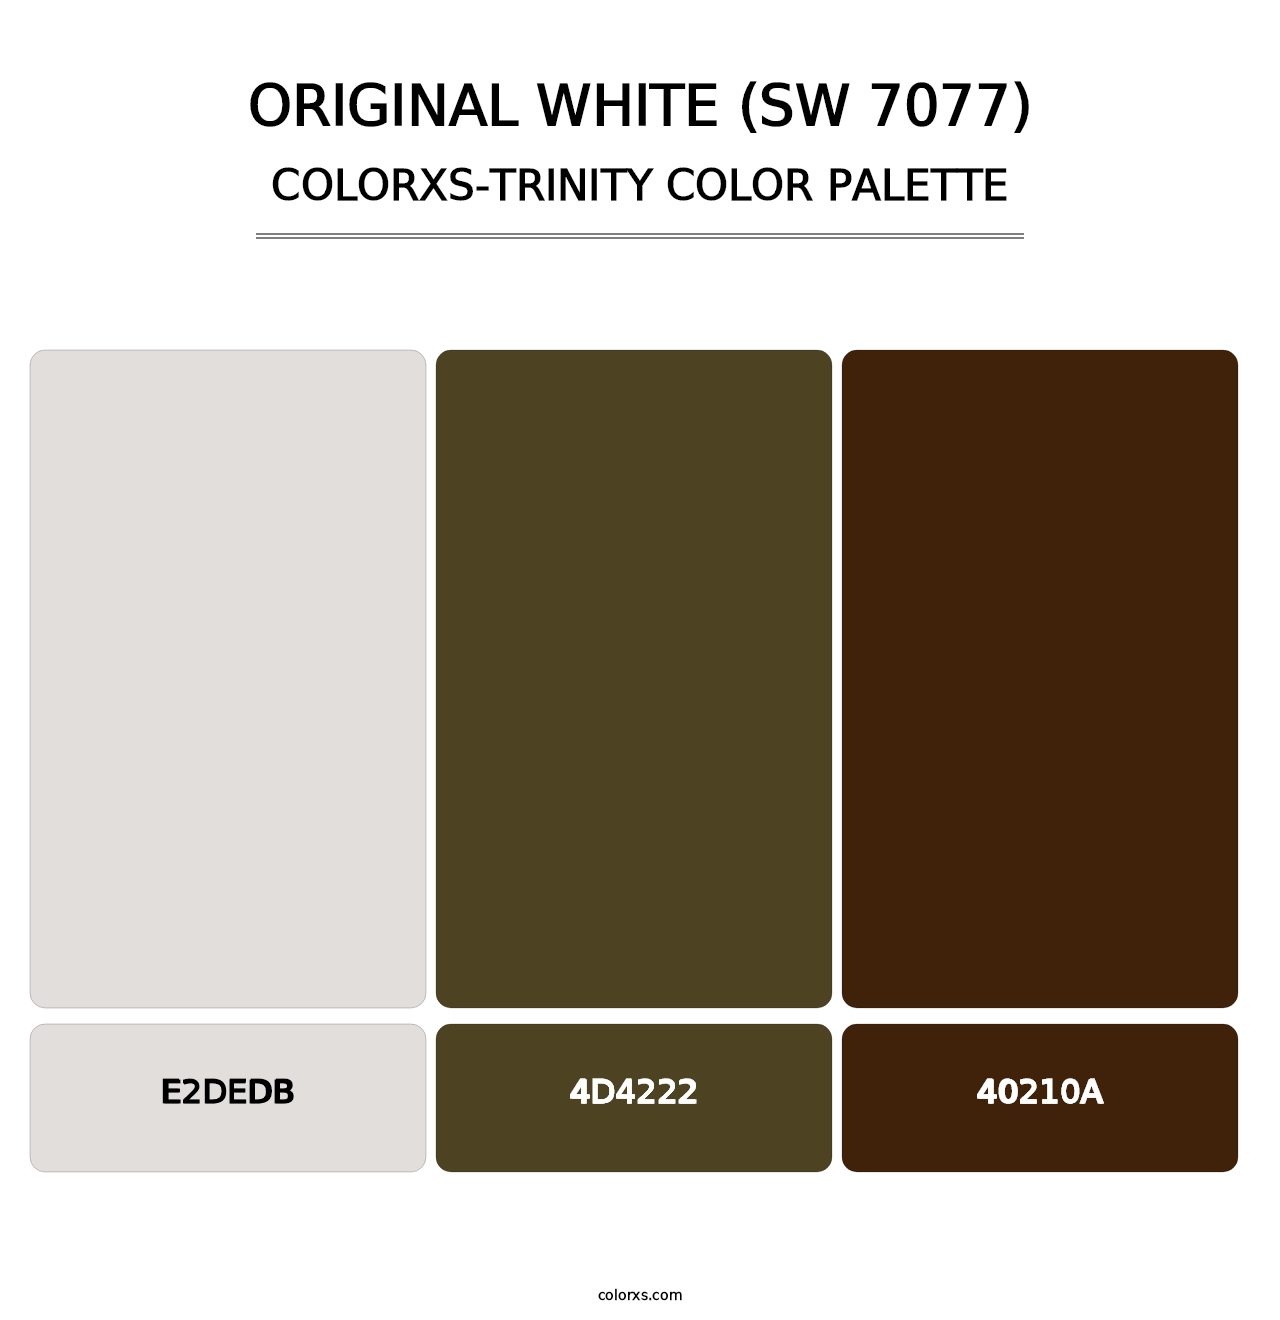 Original White (SW 7077) - Colorxs Trinity Palette